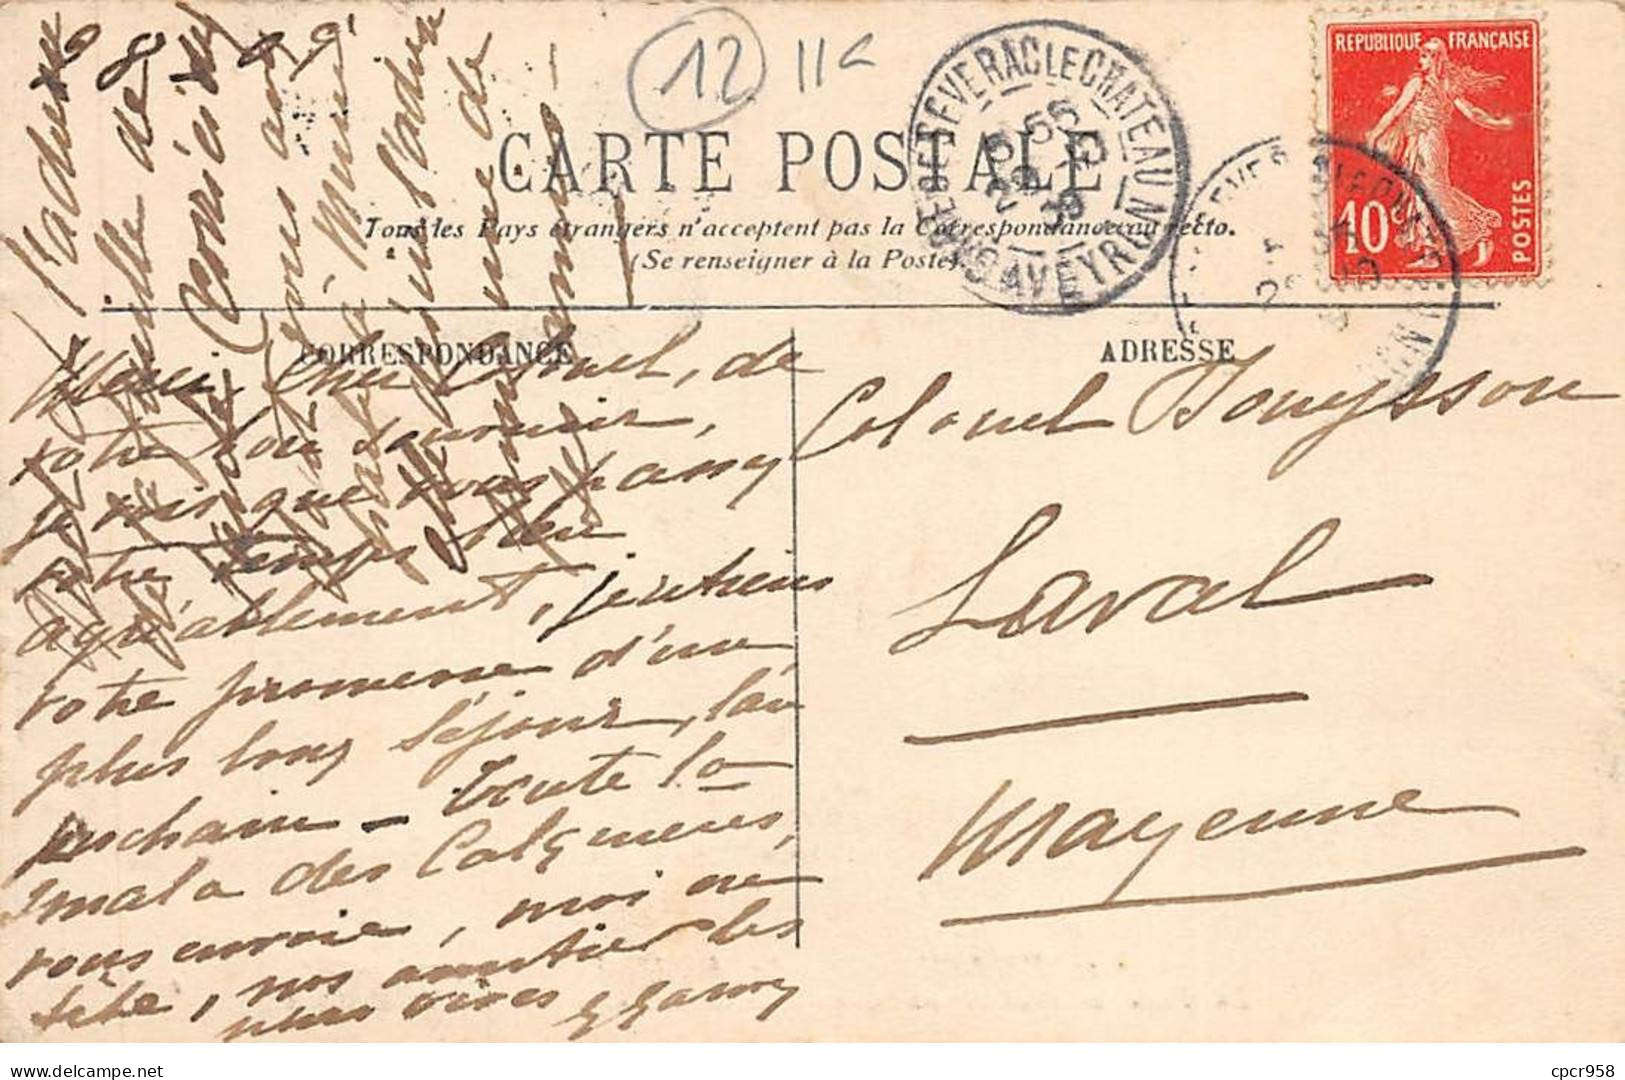 12 - MILLAU - SAN30269 - Fêtes Des 16,17,18 Octobre 1909- La Foule Se Rendant Au Couronnement De La Reine De La Ganterie - Millau